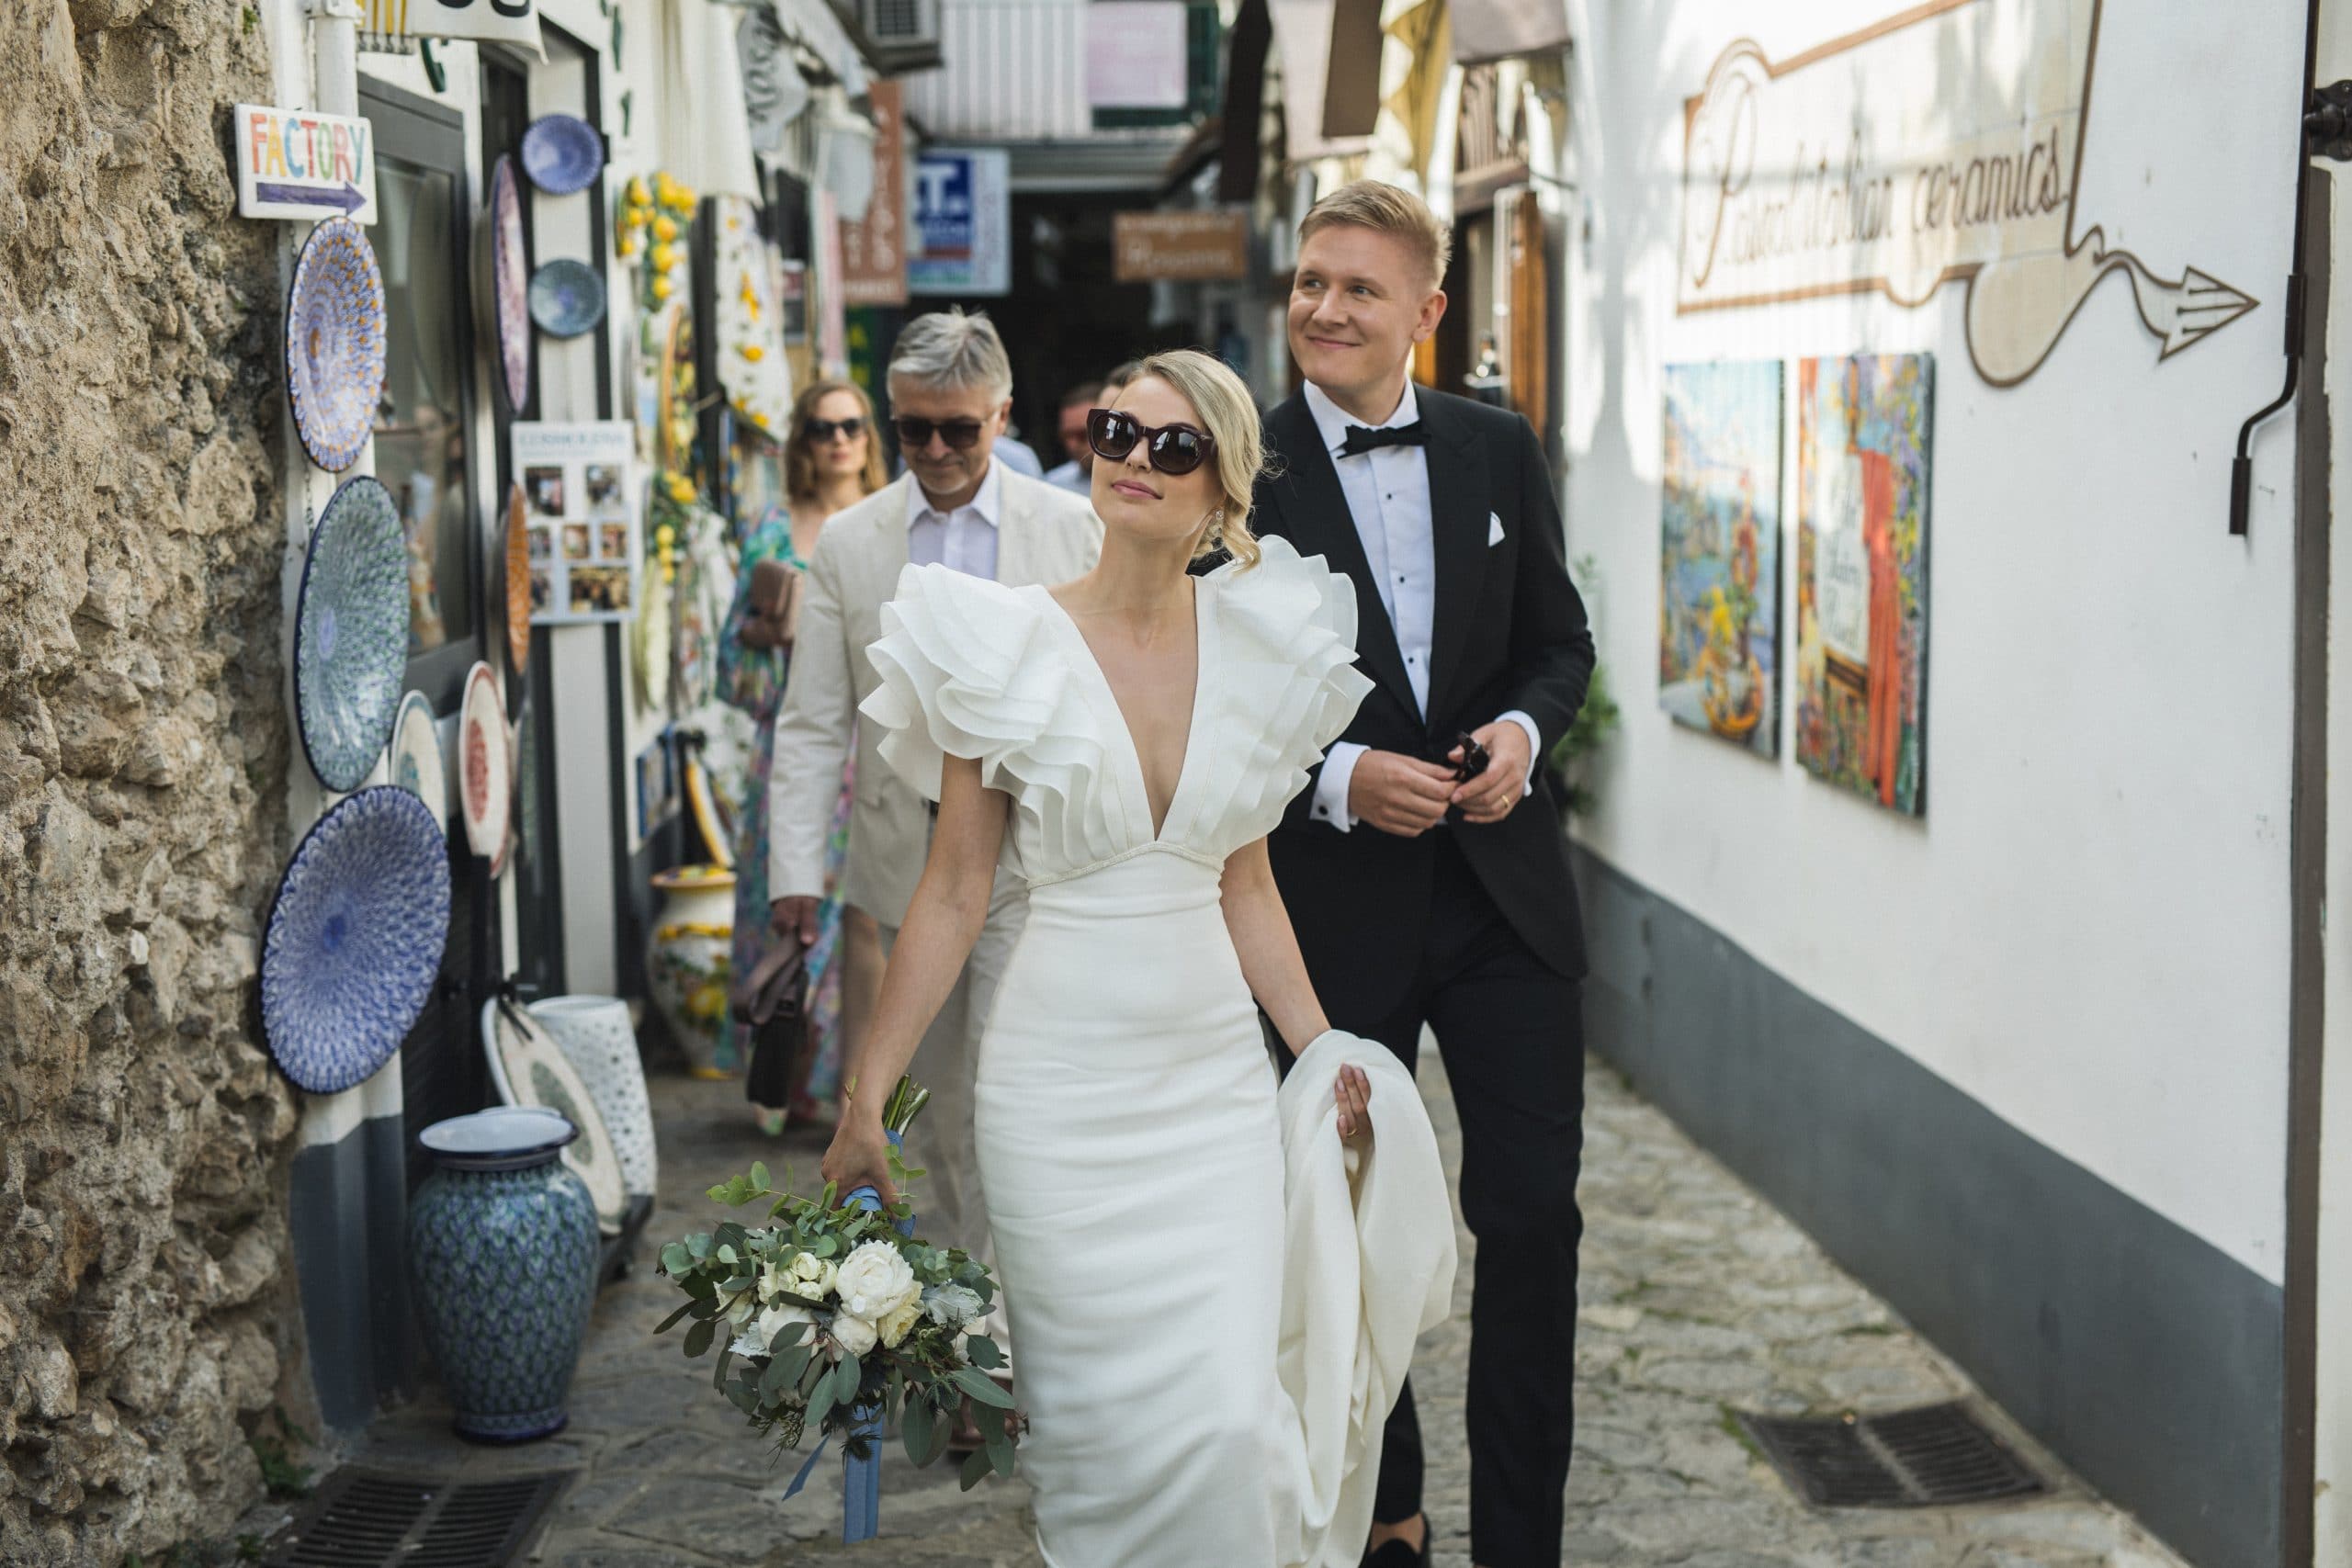 Vilma Wedding & Event Planner _ Vilma Rapšaitė _ vestuvių planuotoja organizatorė koordinatorė _ Scala _ Amalfio pakrantė _ gatvės fotografija